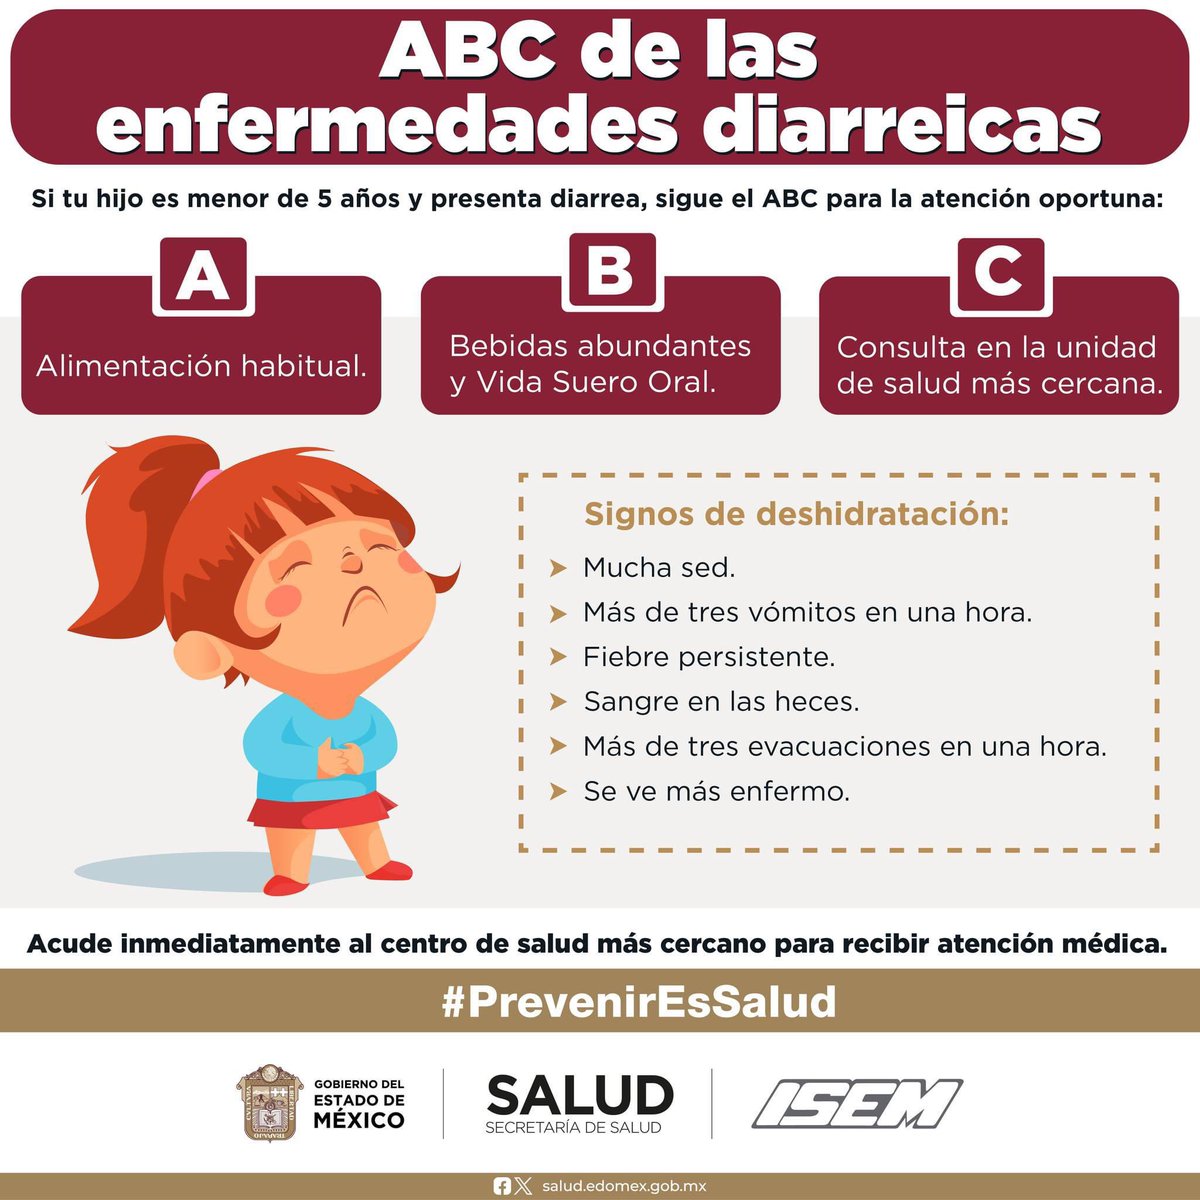 Conoce el ABC de las #EnfermedadesDiarreicas para una atención oportuna en menores de 5 años.
Ante cualquier emergencia acude a la unidad de salud más cercana.
#PrevenirEsSalud